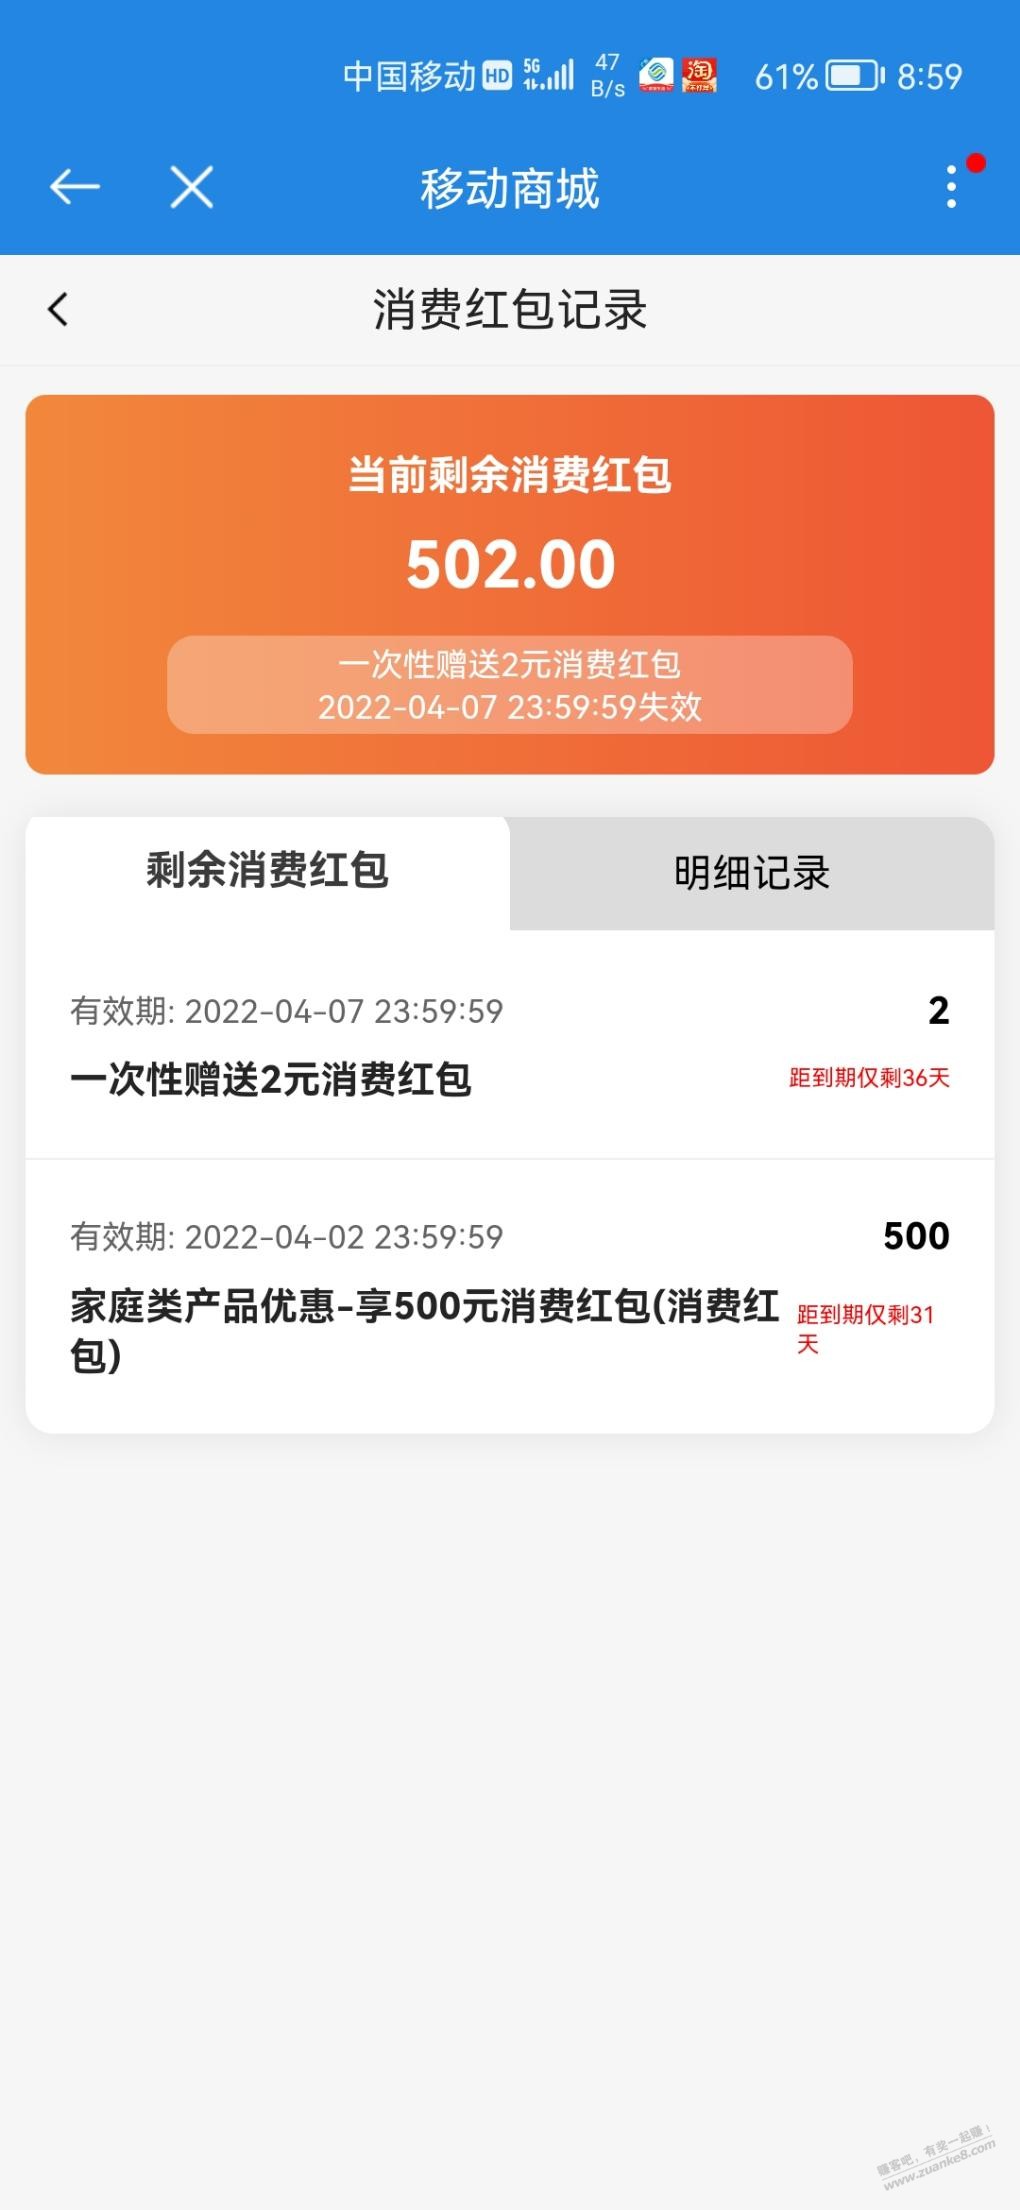 广州移动 突然送了500元消费红包给我。-惠小助(52huixz.com)